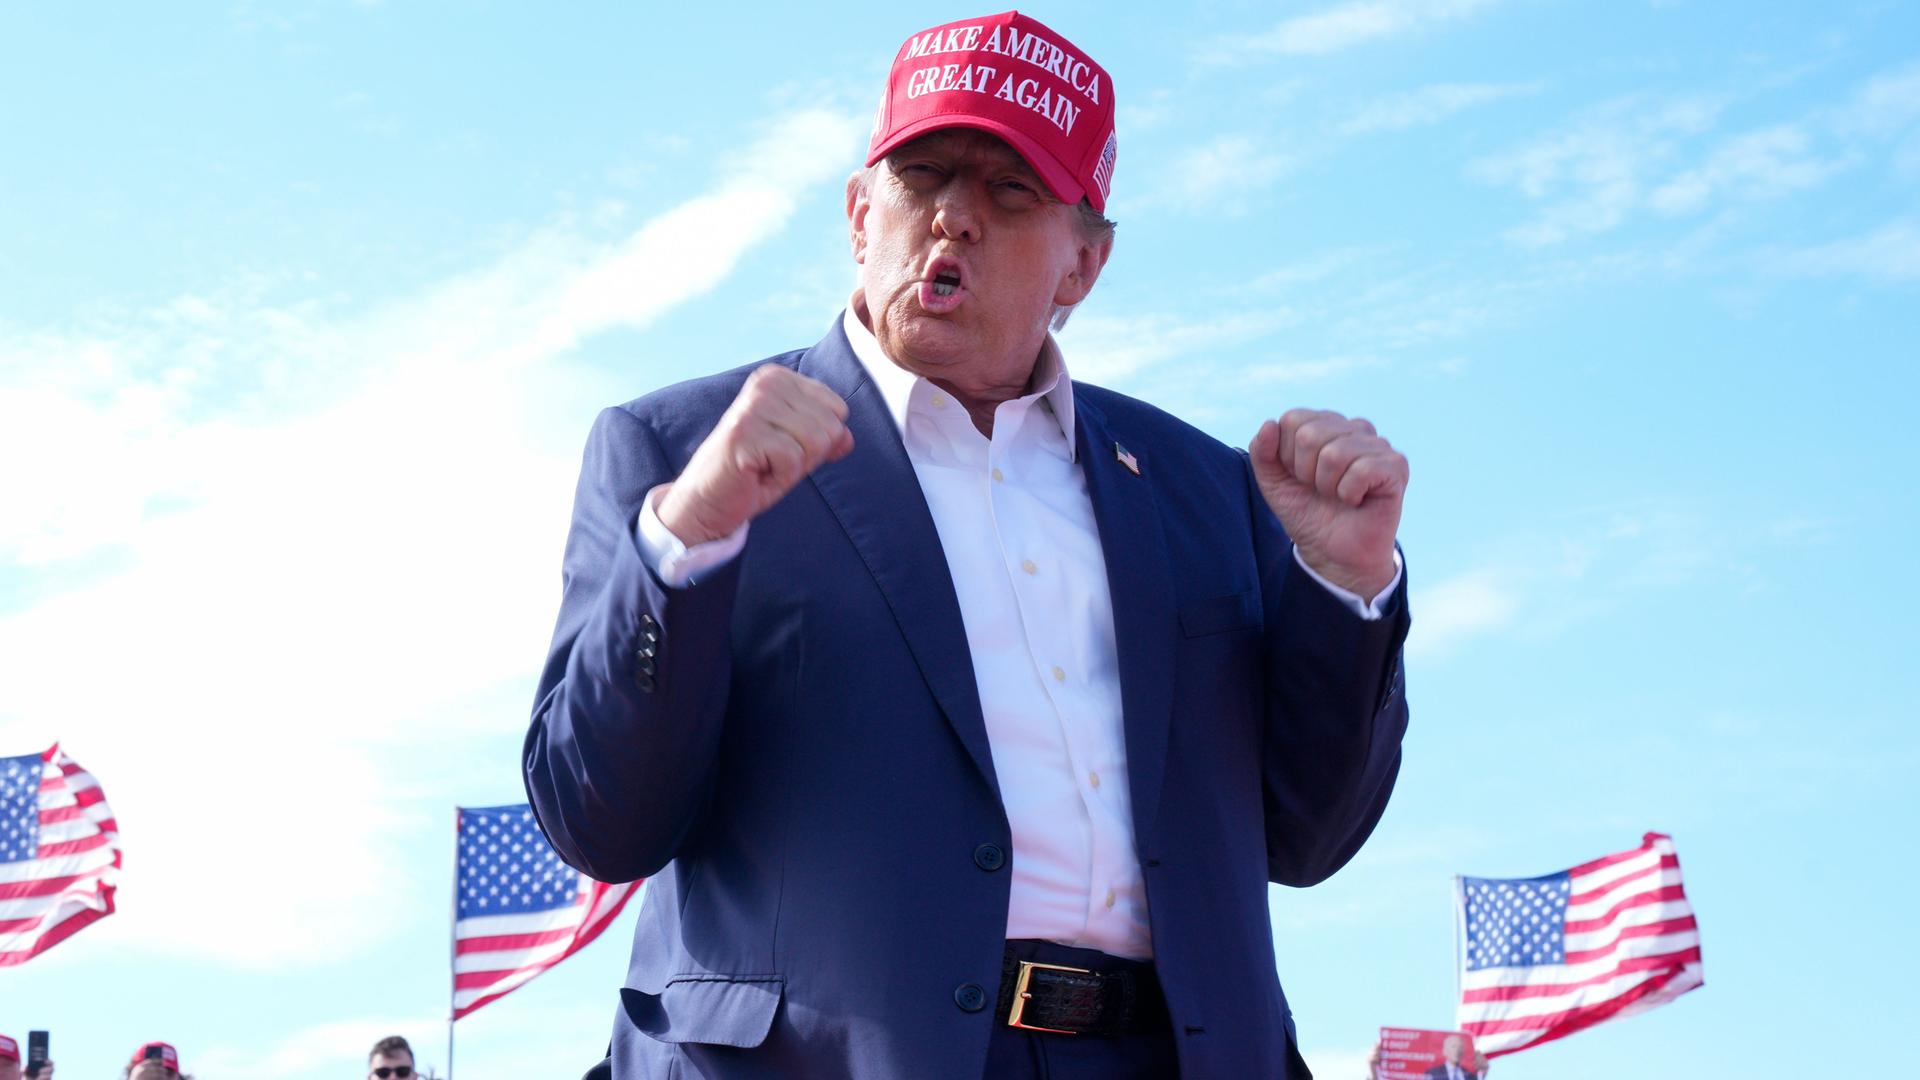 Donald Trump, ehemaliger US-Präsident und republikanischer Bewerber um die Präsidentschaftskandidatur, gestikuliert bei einer Wahlkampfveranstaltung in Vandalia, Ohio. Er trägt Hemd, Jacket und eine rote Mütze mit der Aufschrift "Make America Great Again".